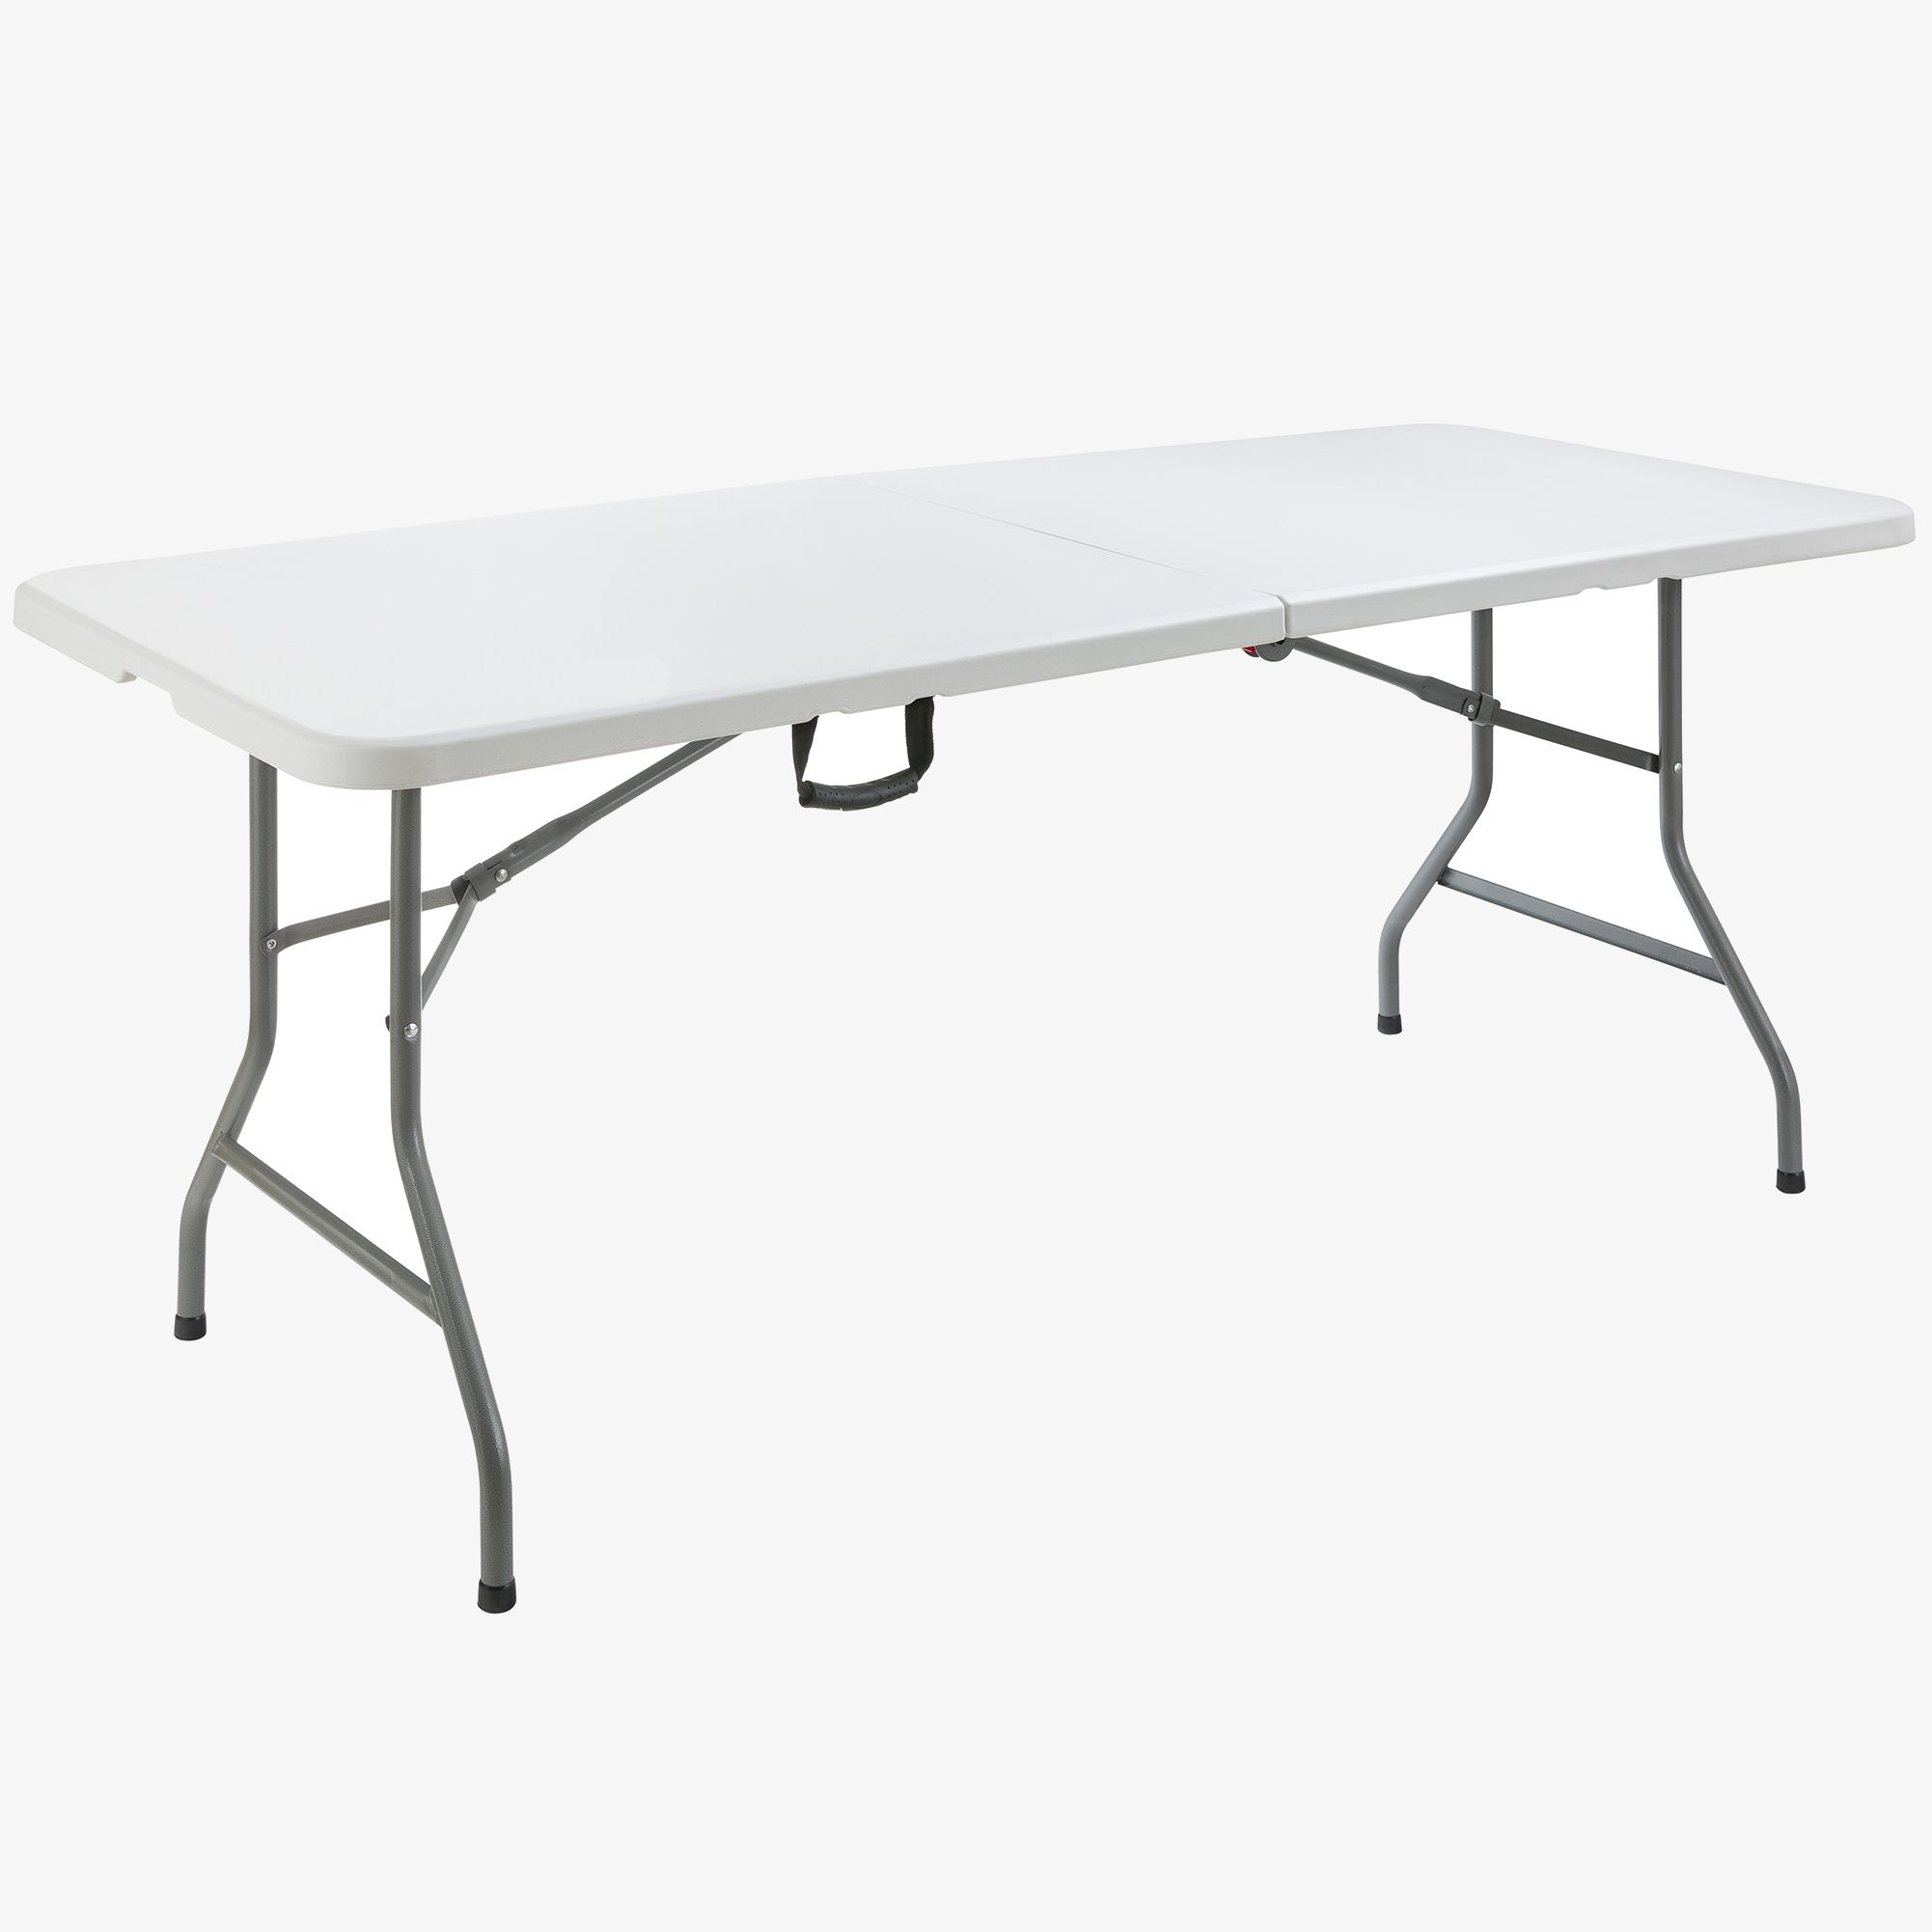 Table pliante - 180 cm - 8 personnes - plastique